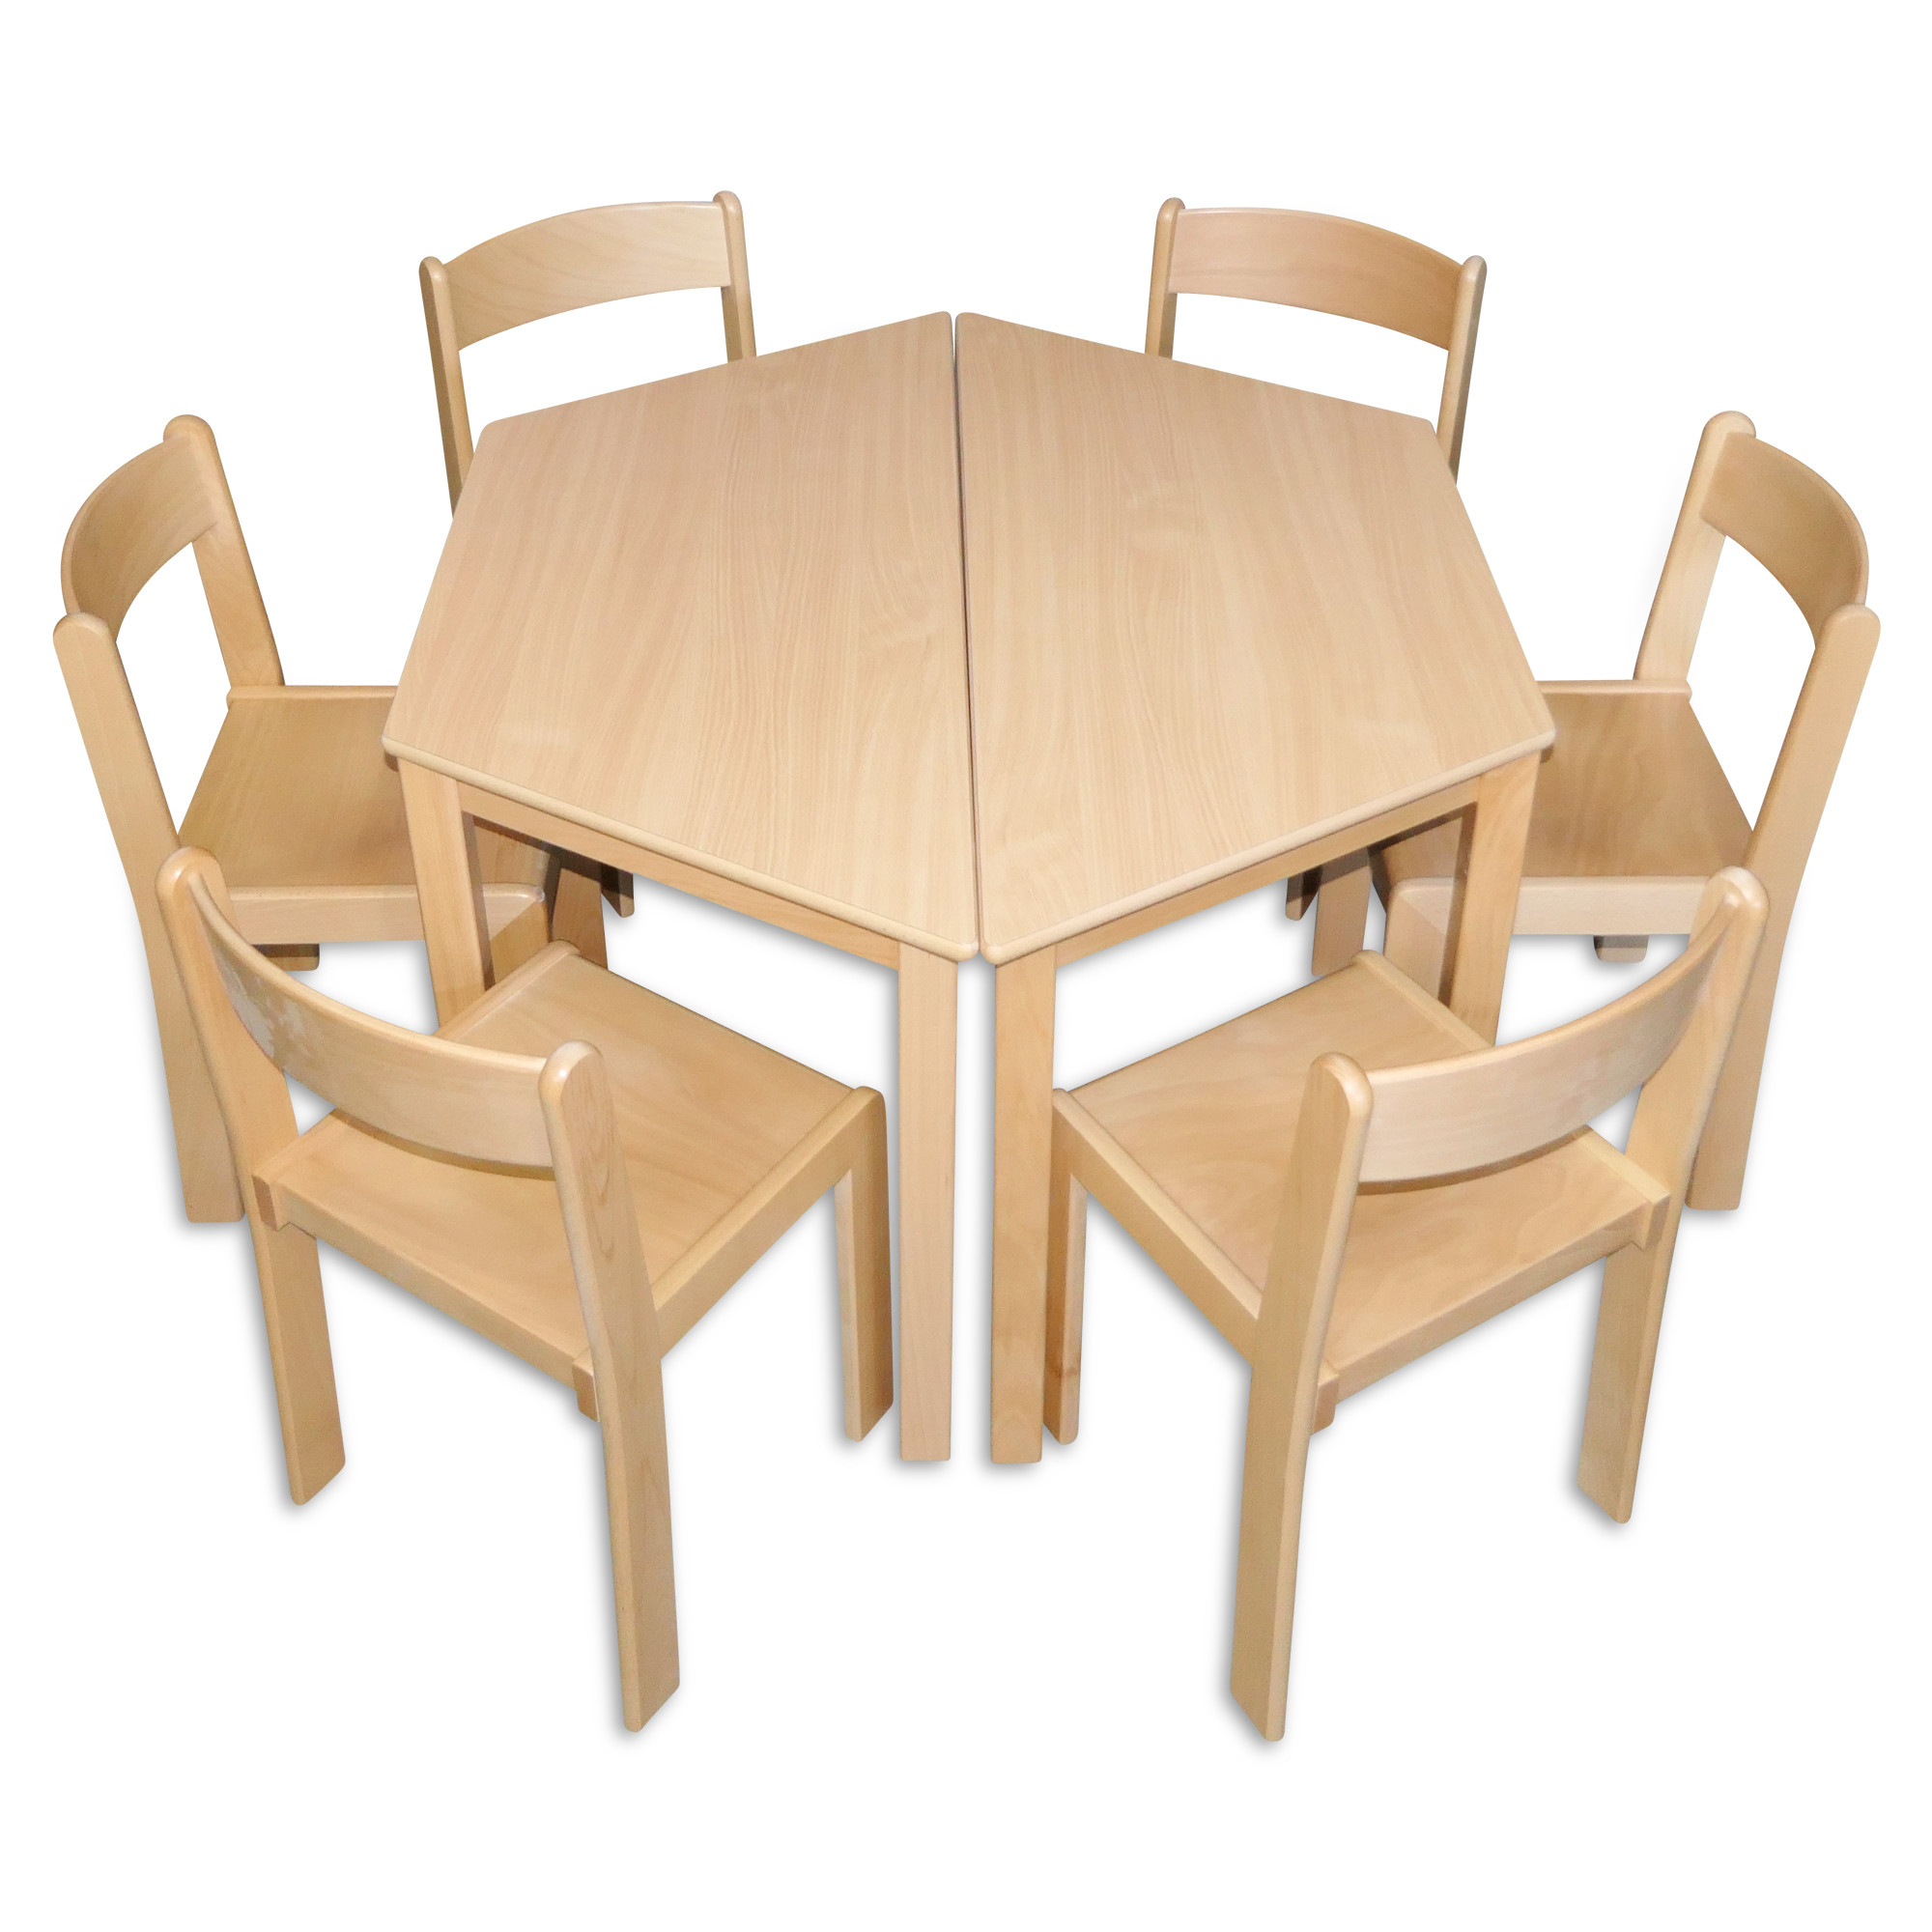 Krippen Kindergarten Möbelset Tisch + 2 Stuhl mit Armlehnen + 2 Stapelstuhl